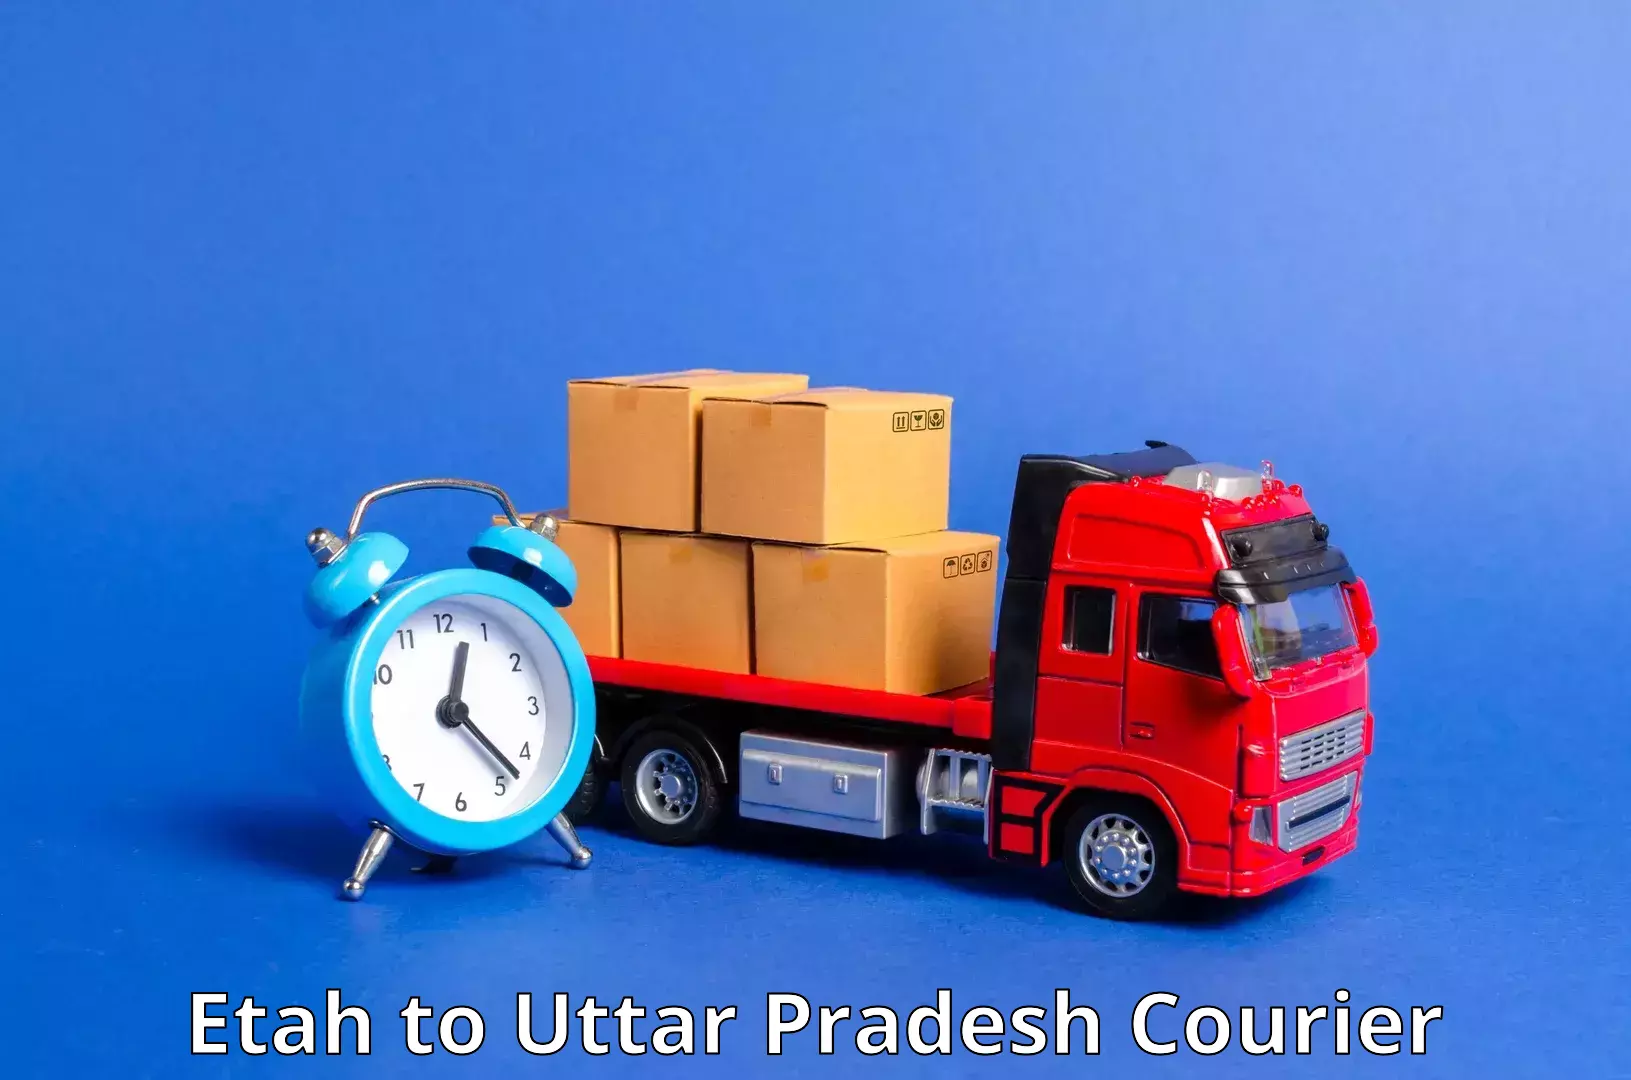 Next-day delivery options Etah to Gorakhpur